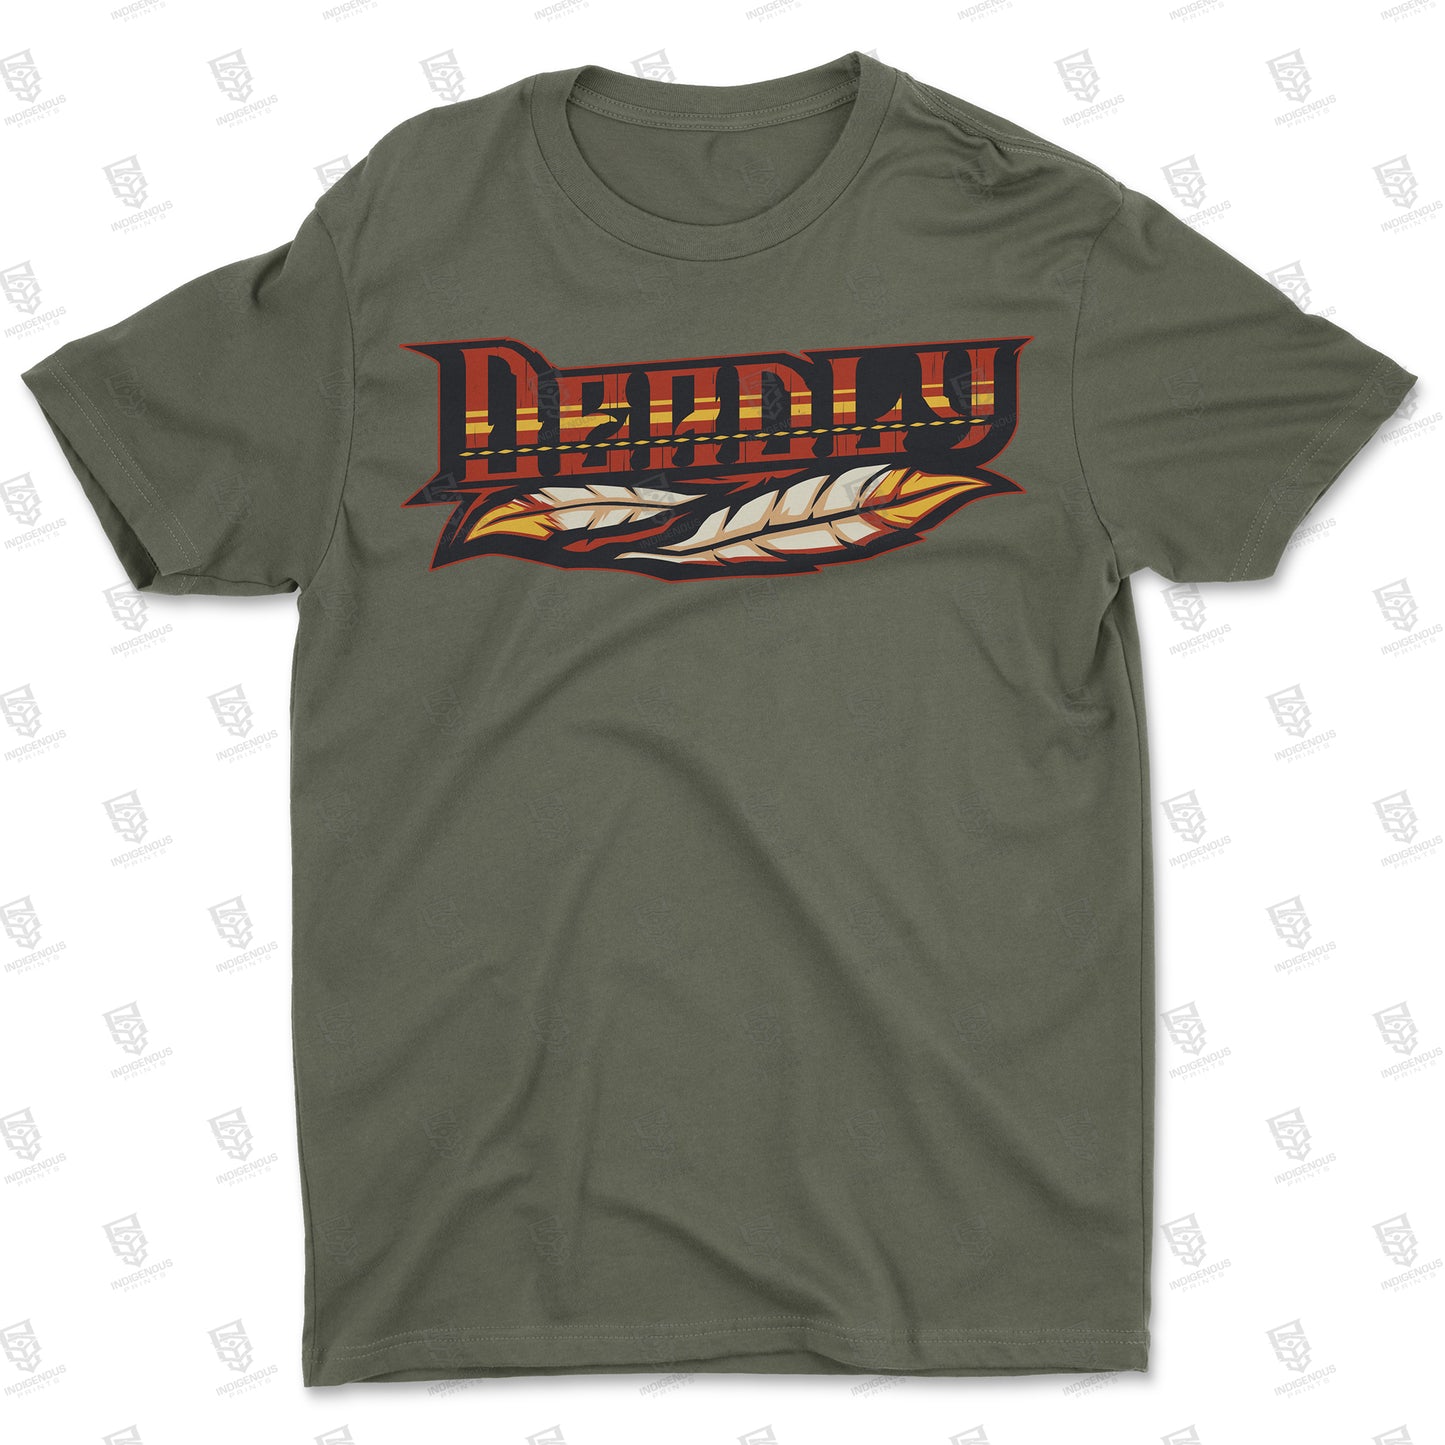 Deadly Shirt